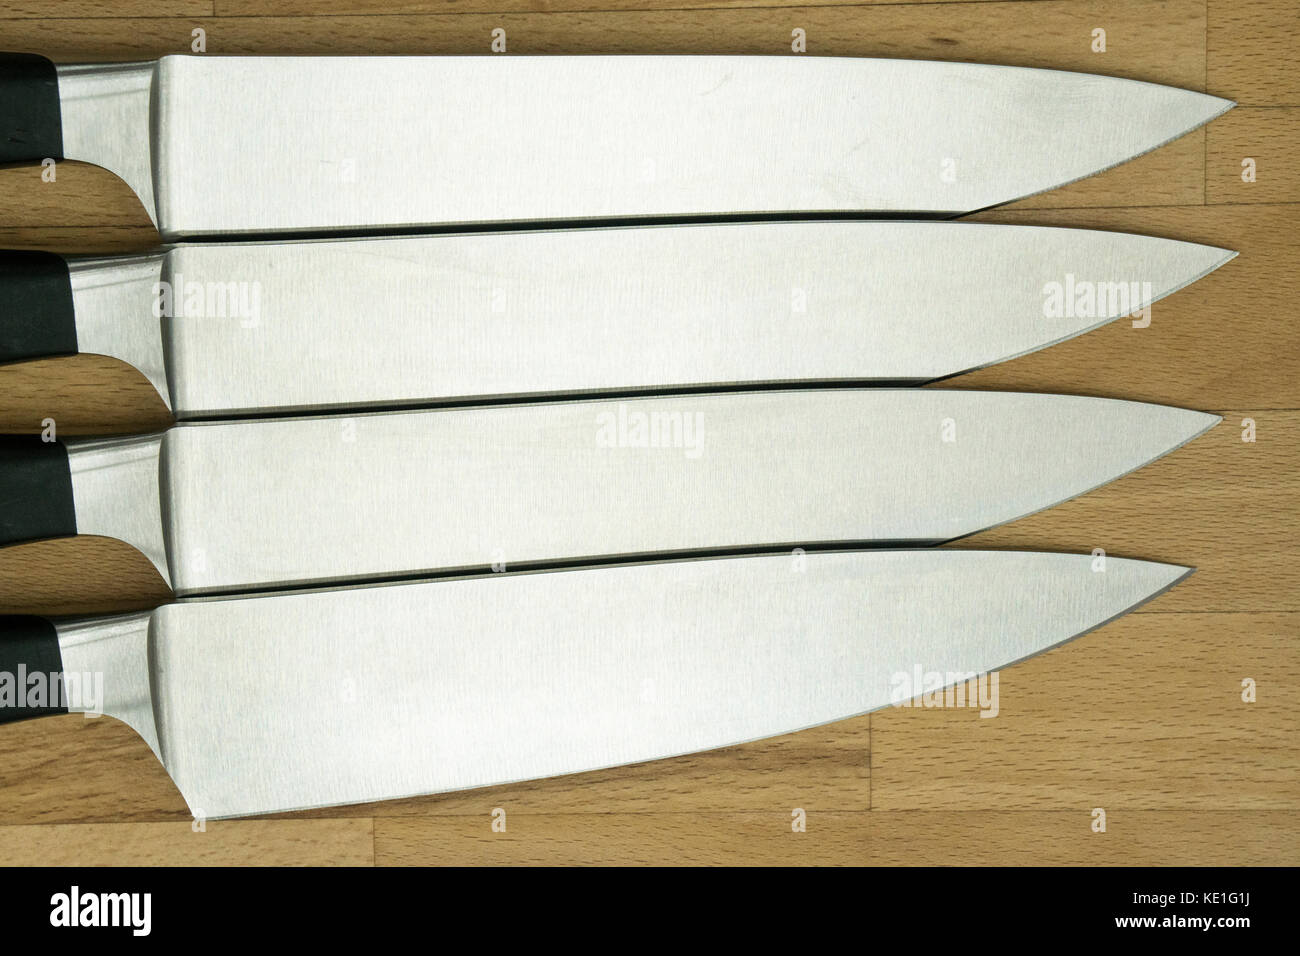 Quatre couteaux de cuisine identiques sur un plan de travail en bois Banque D'Images